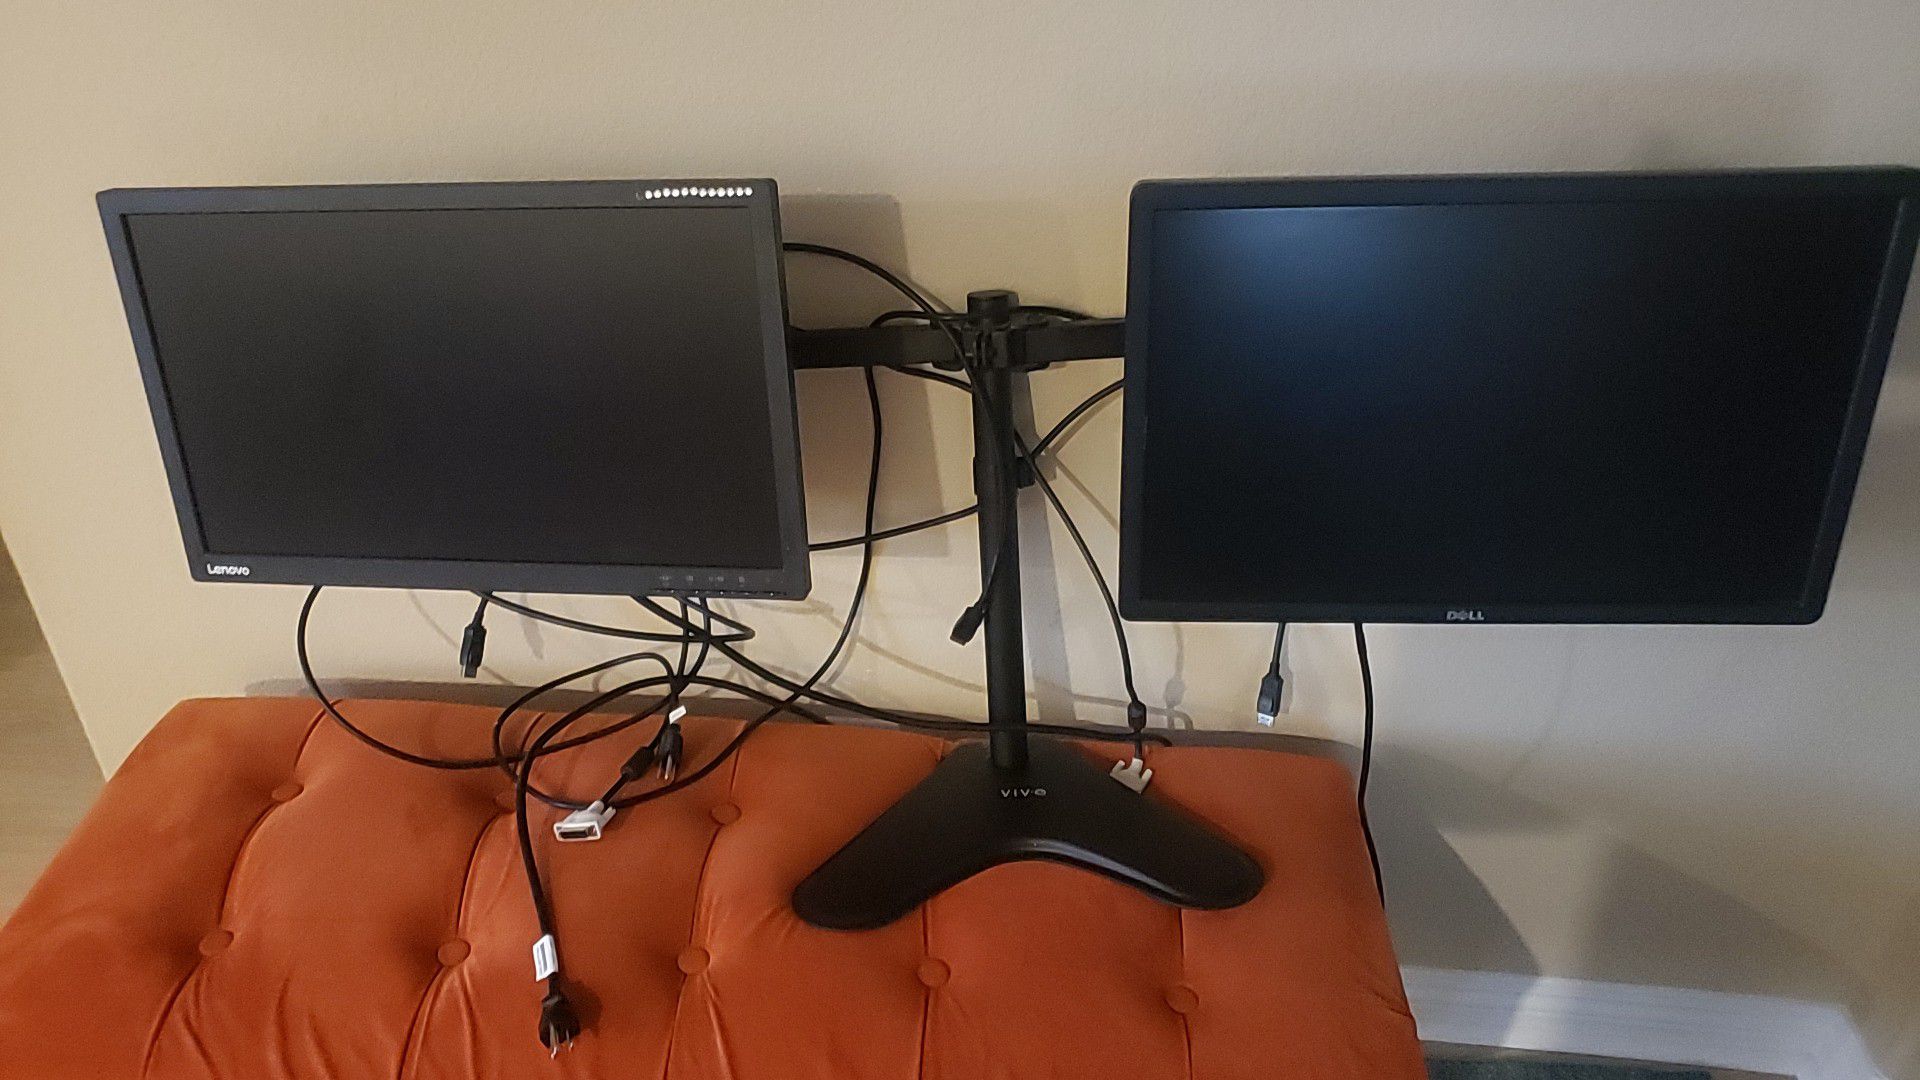 Lenovo and Dell dual monitor setup